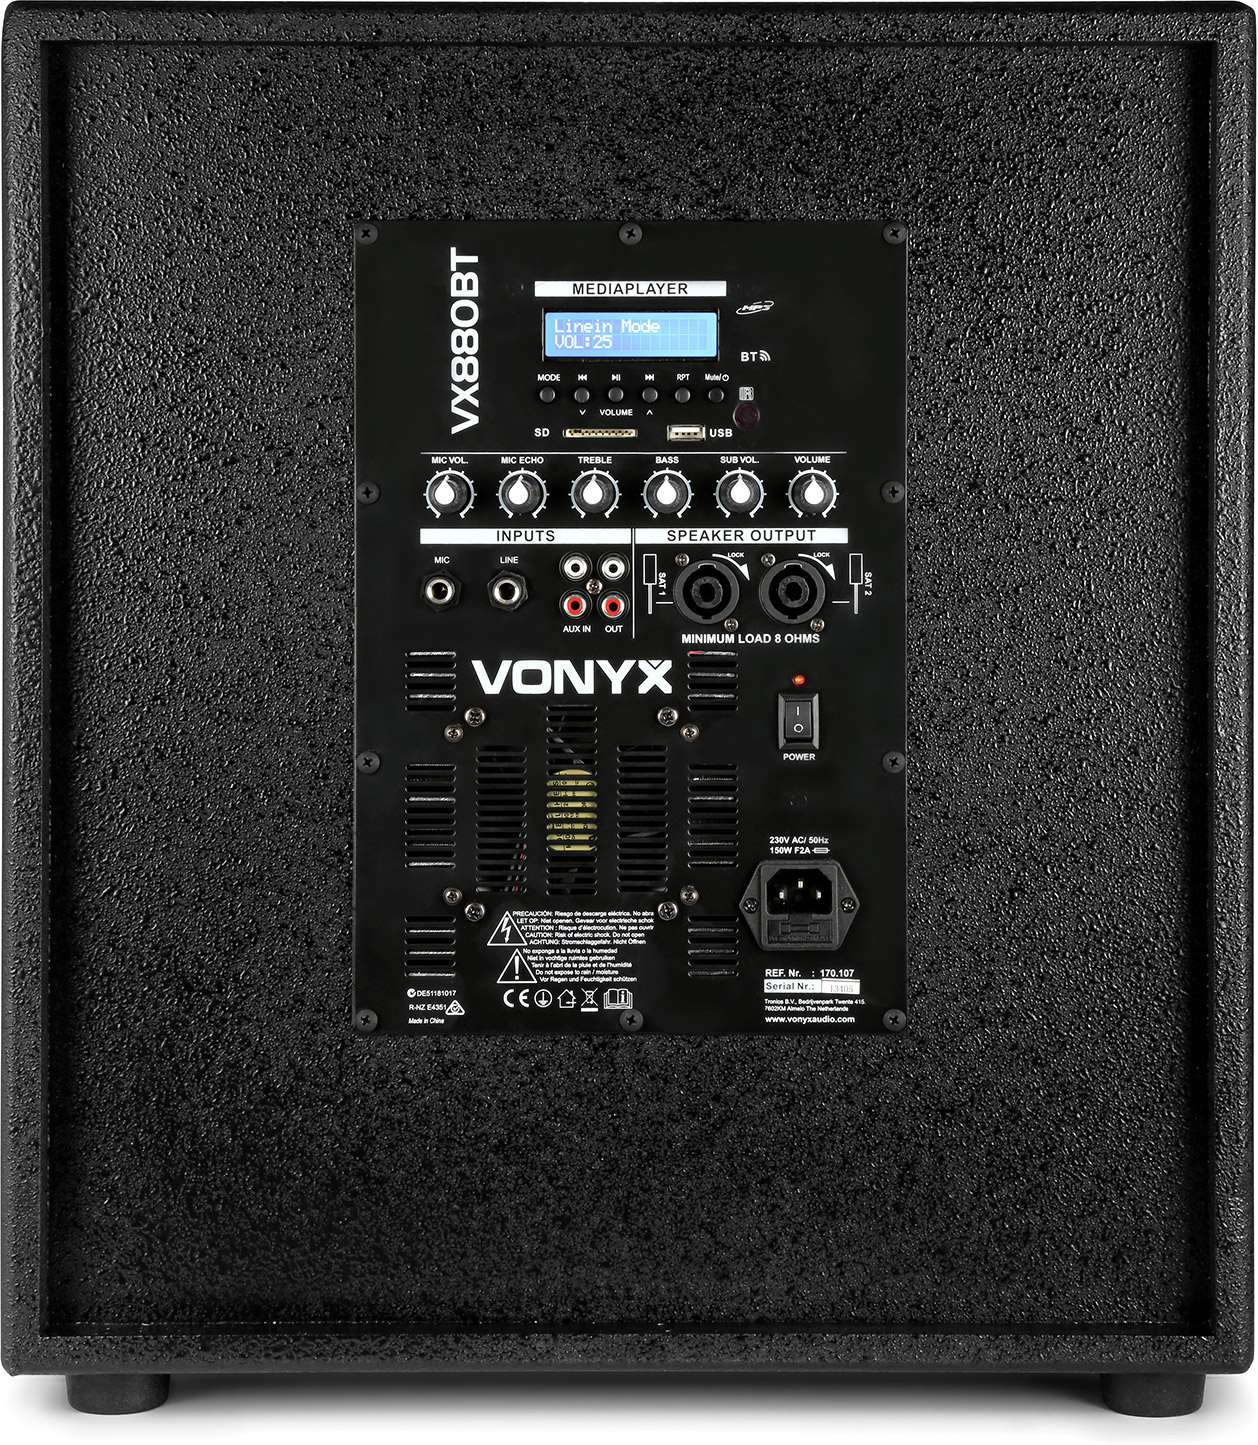 ⚡ Vonyx Vsa10bt Altavoces Activos Bi-Amplificados